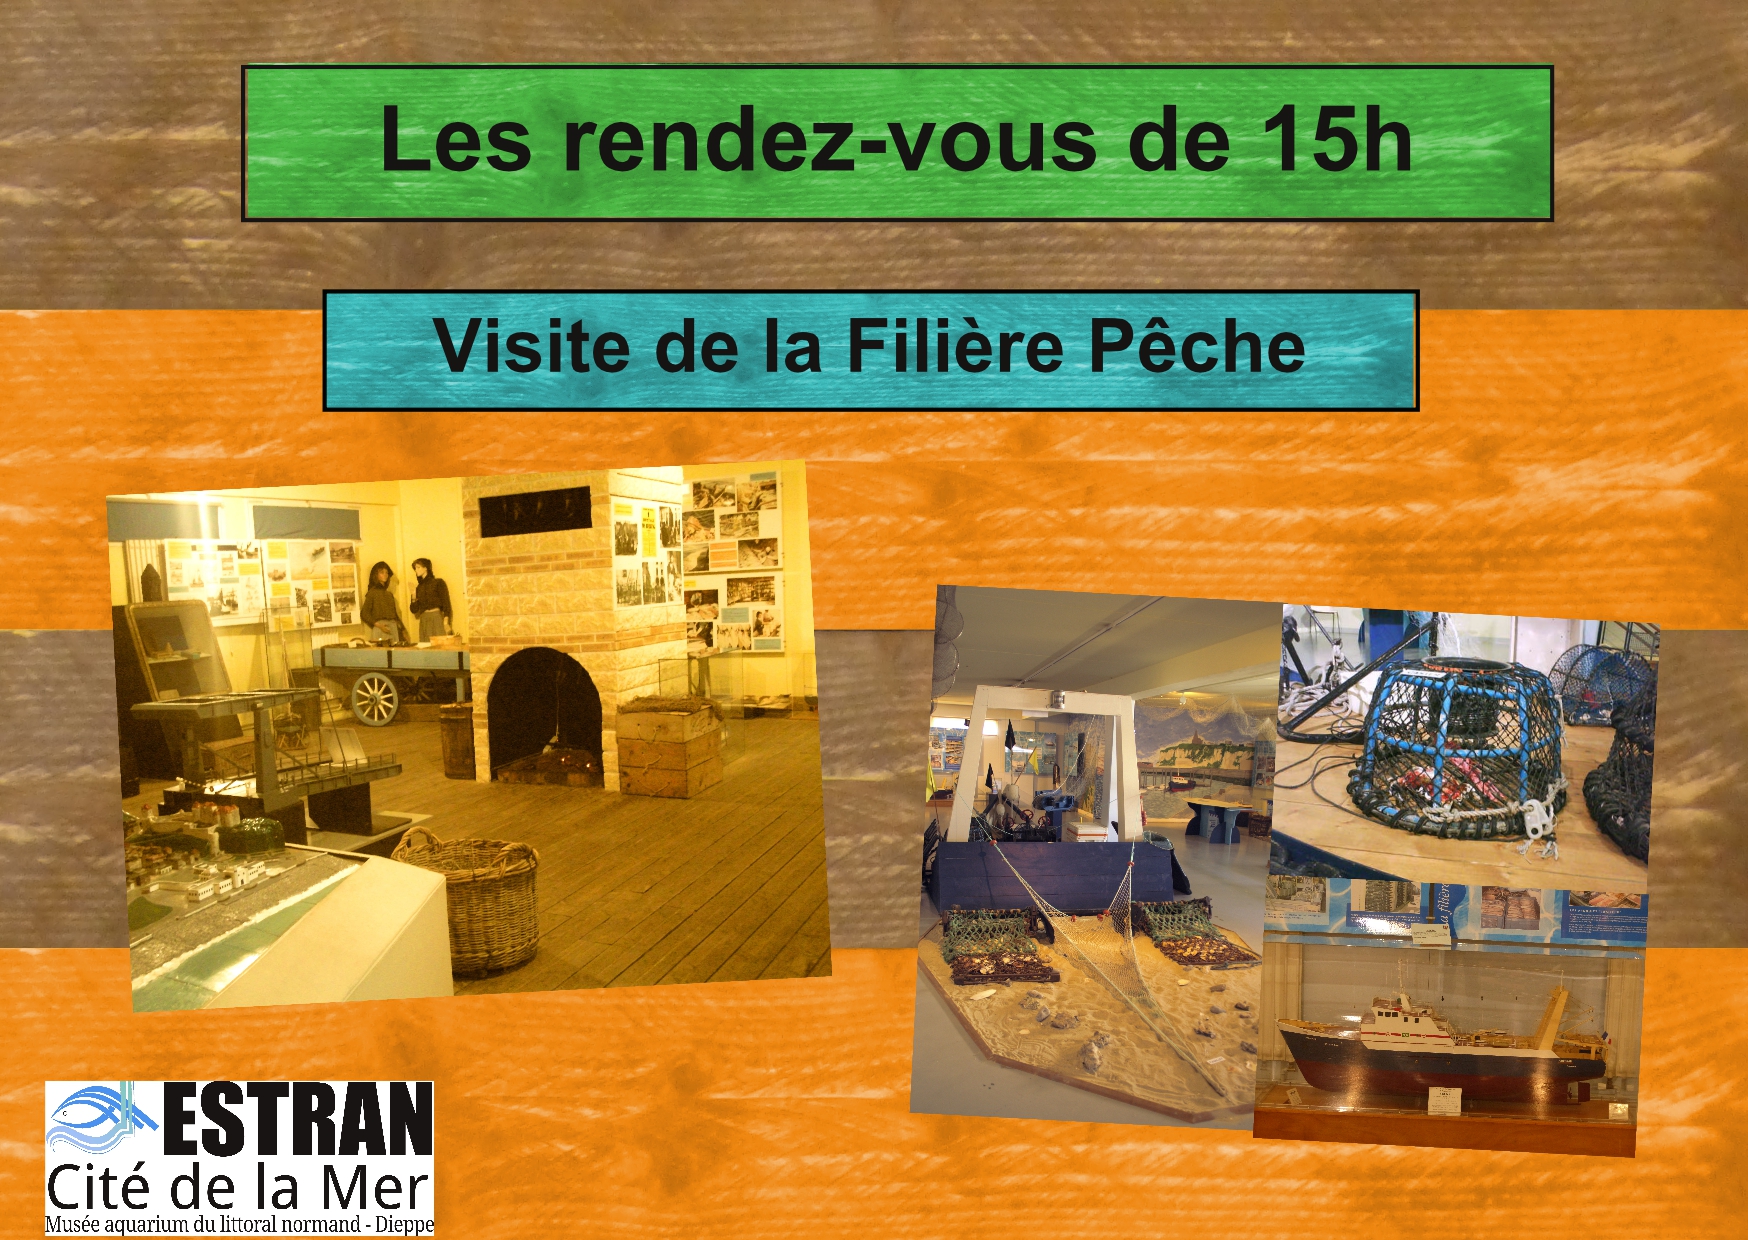 Les Petits Rendez-Vous de 15h "Filière Pêche" @ ESTRAN - Cité de la Mer | Dieppe | Normandie | France